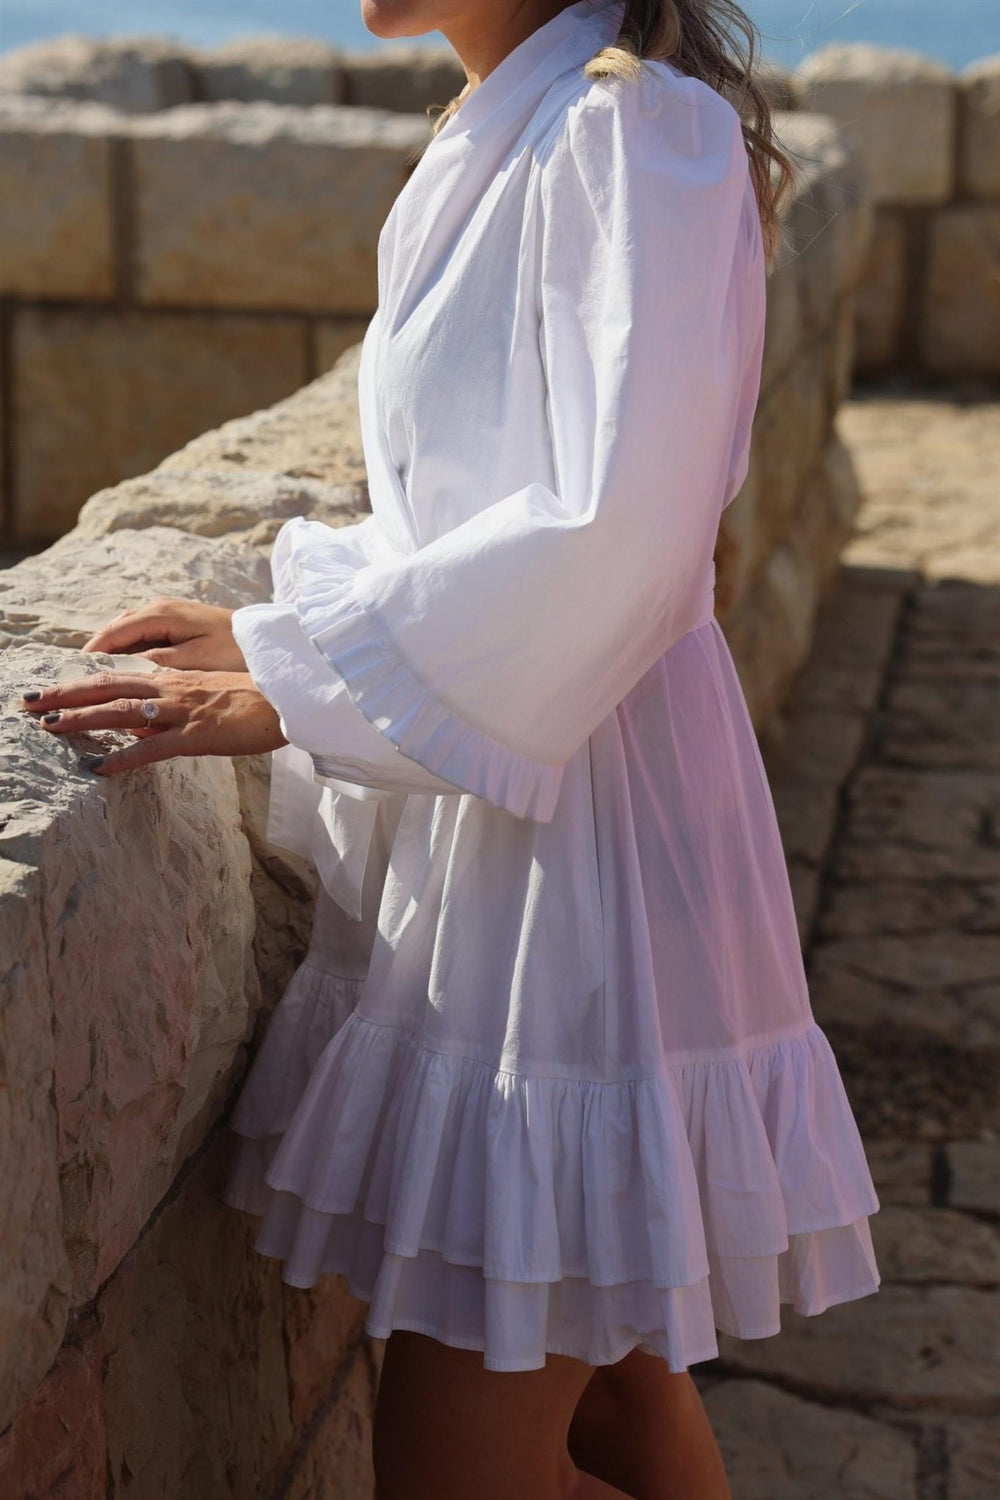 Jenny B Mini Dress White | Kjoler | Smuk - Dameklær på nett